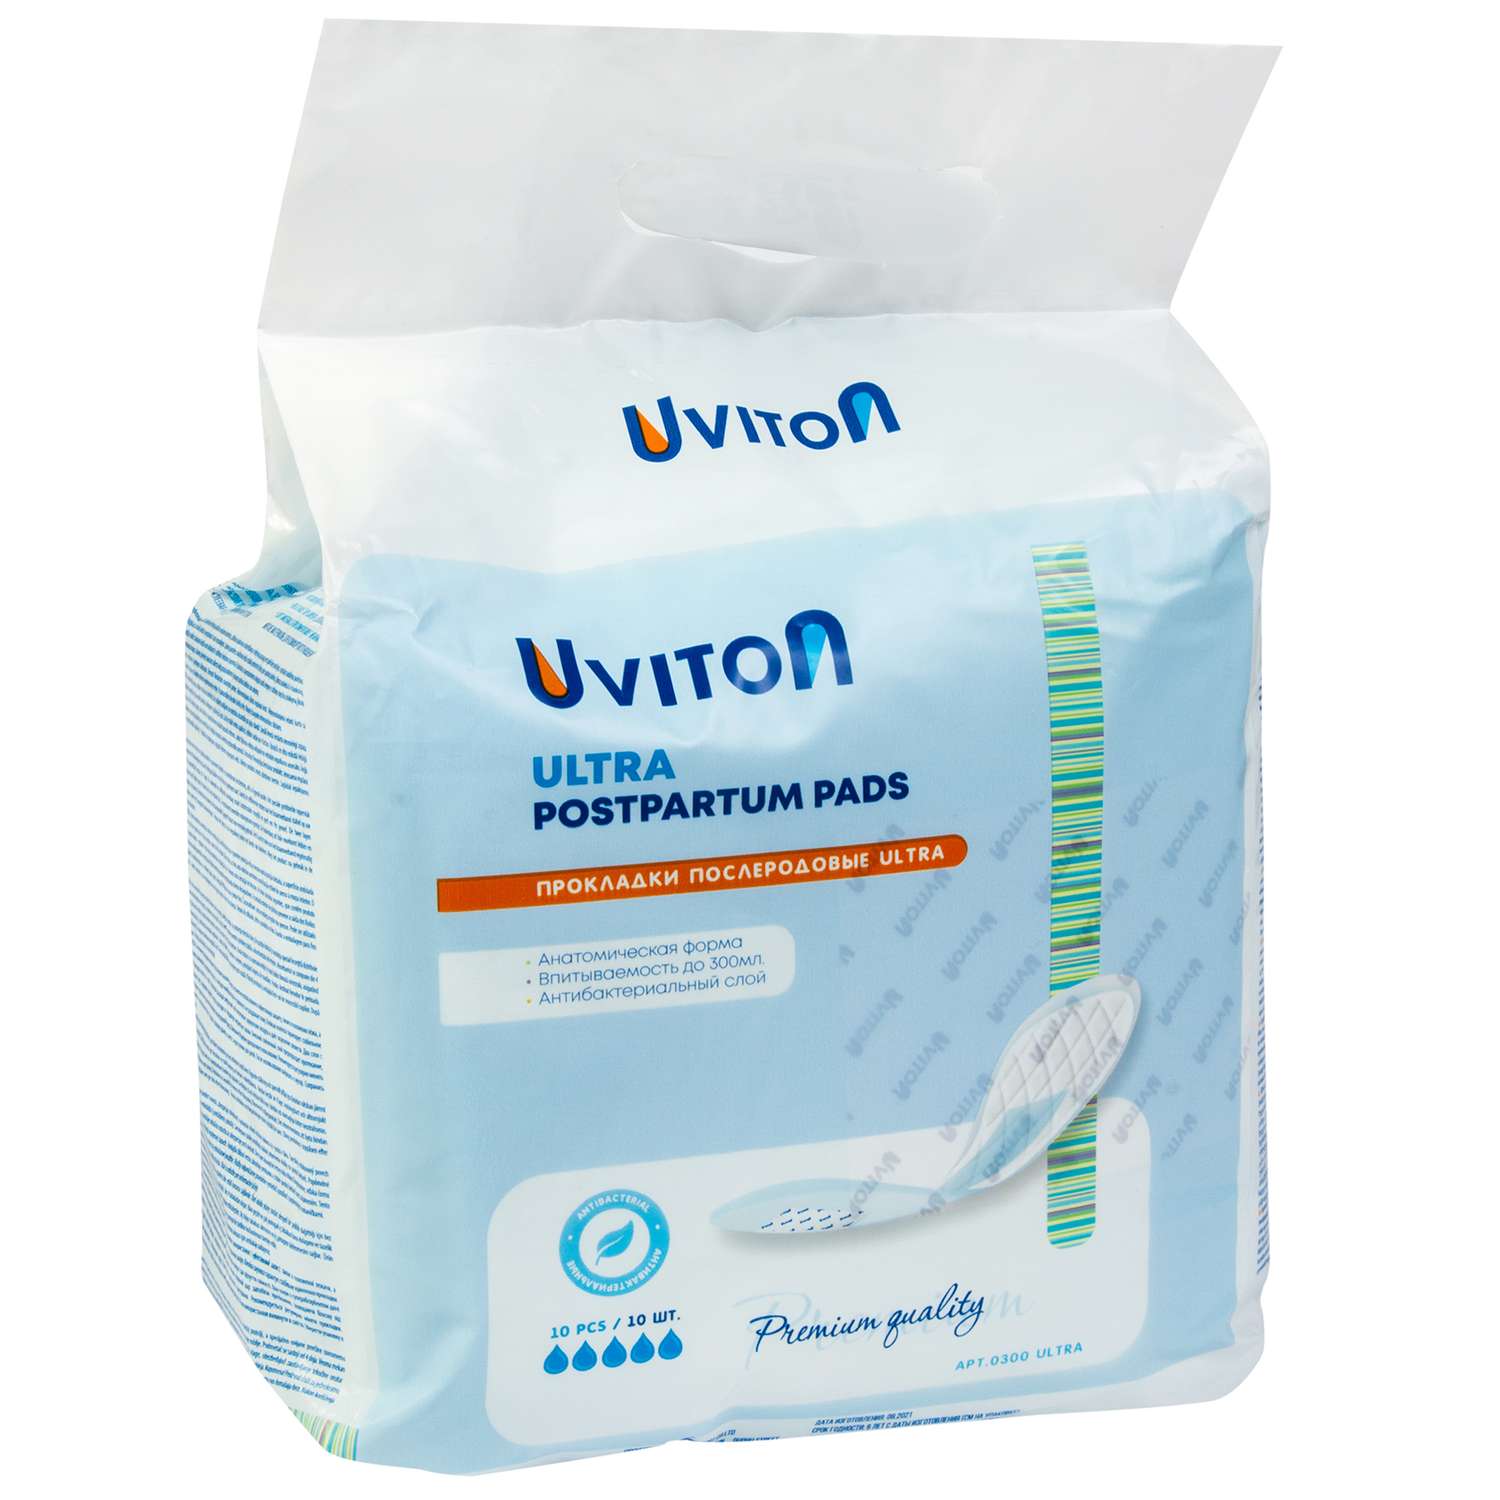 Набор Uviton Прокладки послеродовые ультравпитывающие Ultra и Подгузник Uviton разм. S 1 шт - фото 3